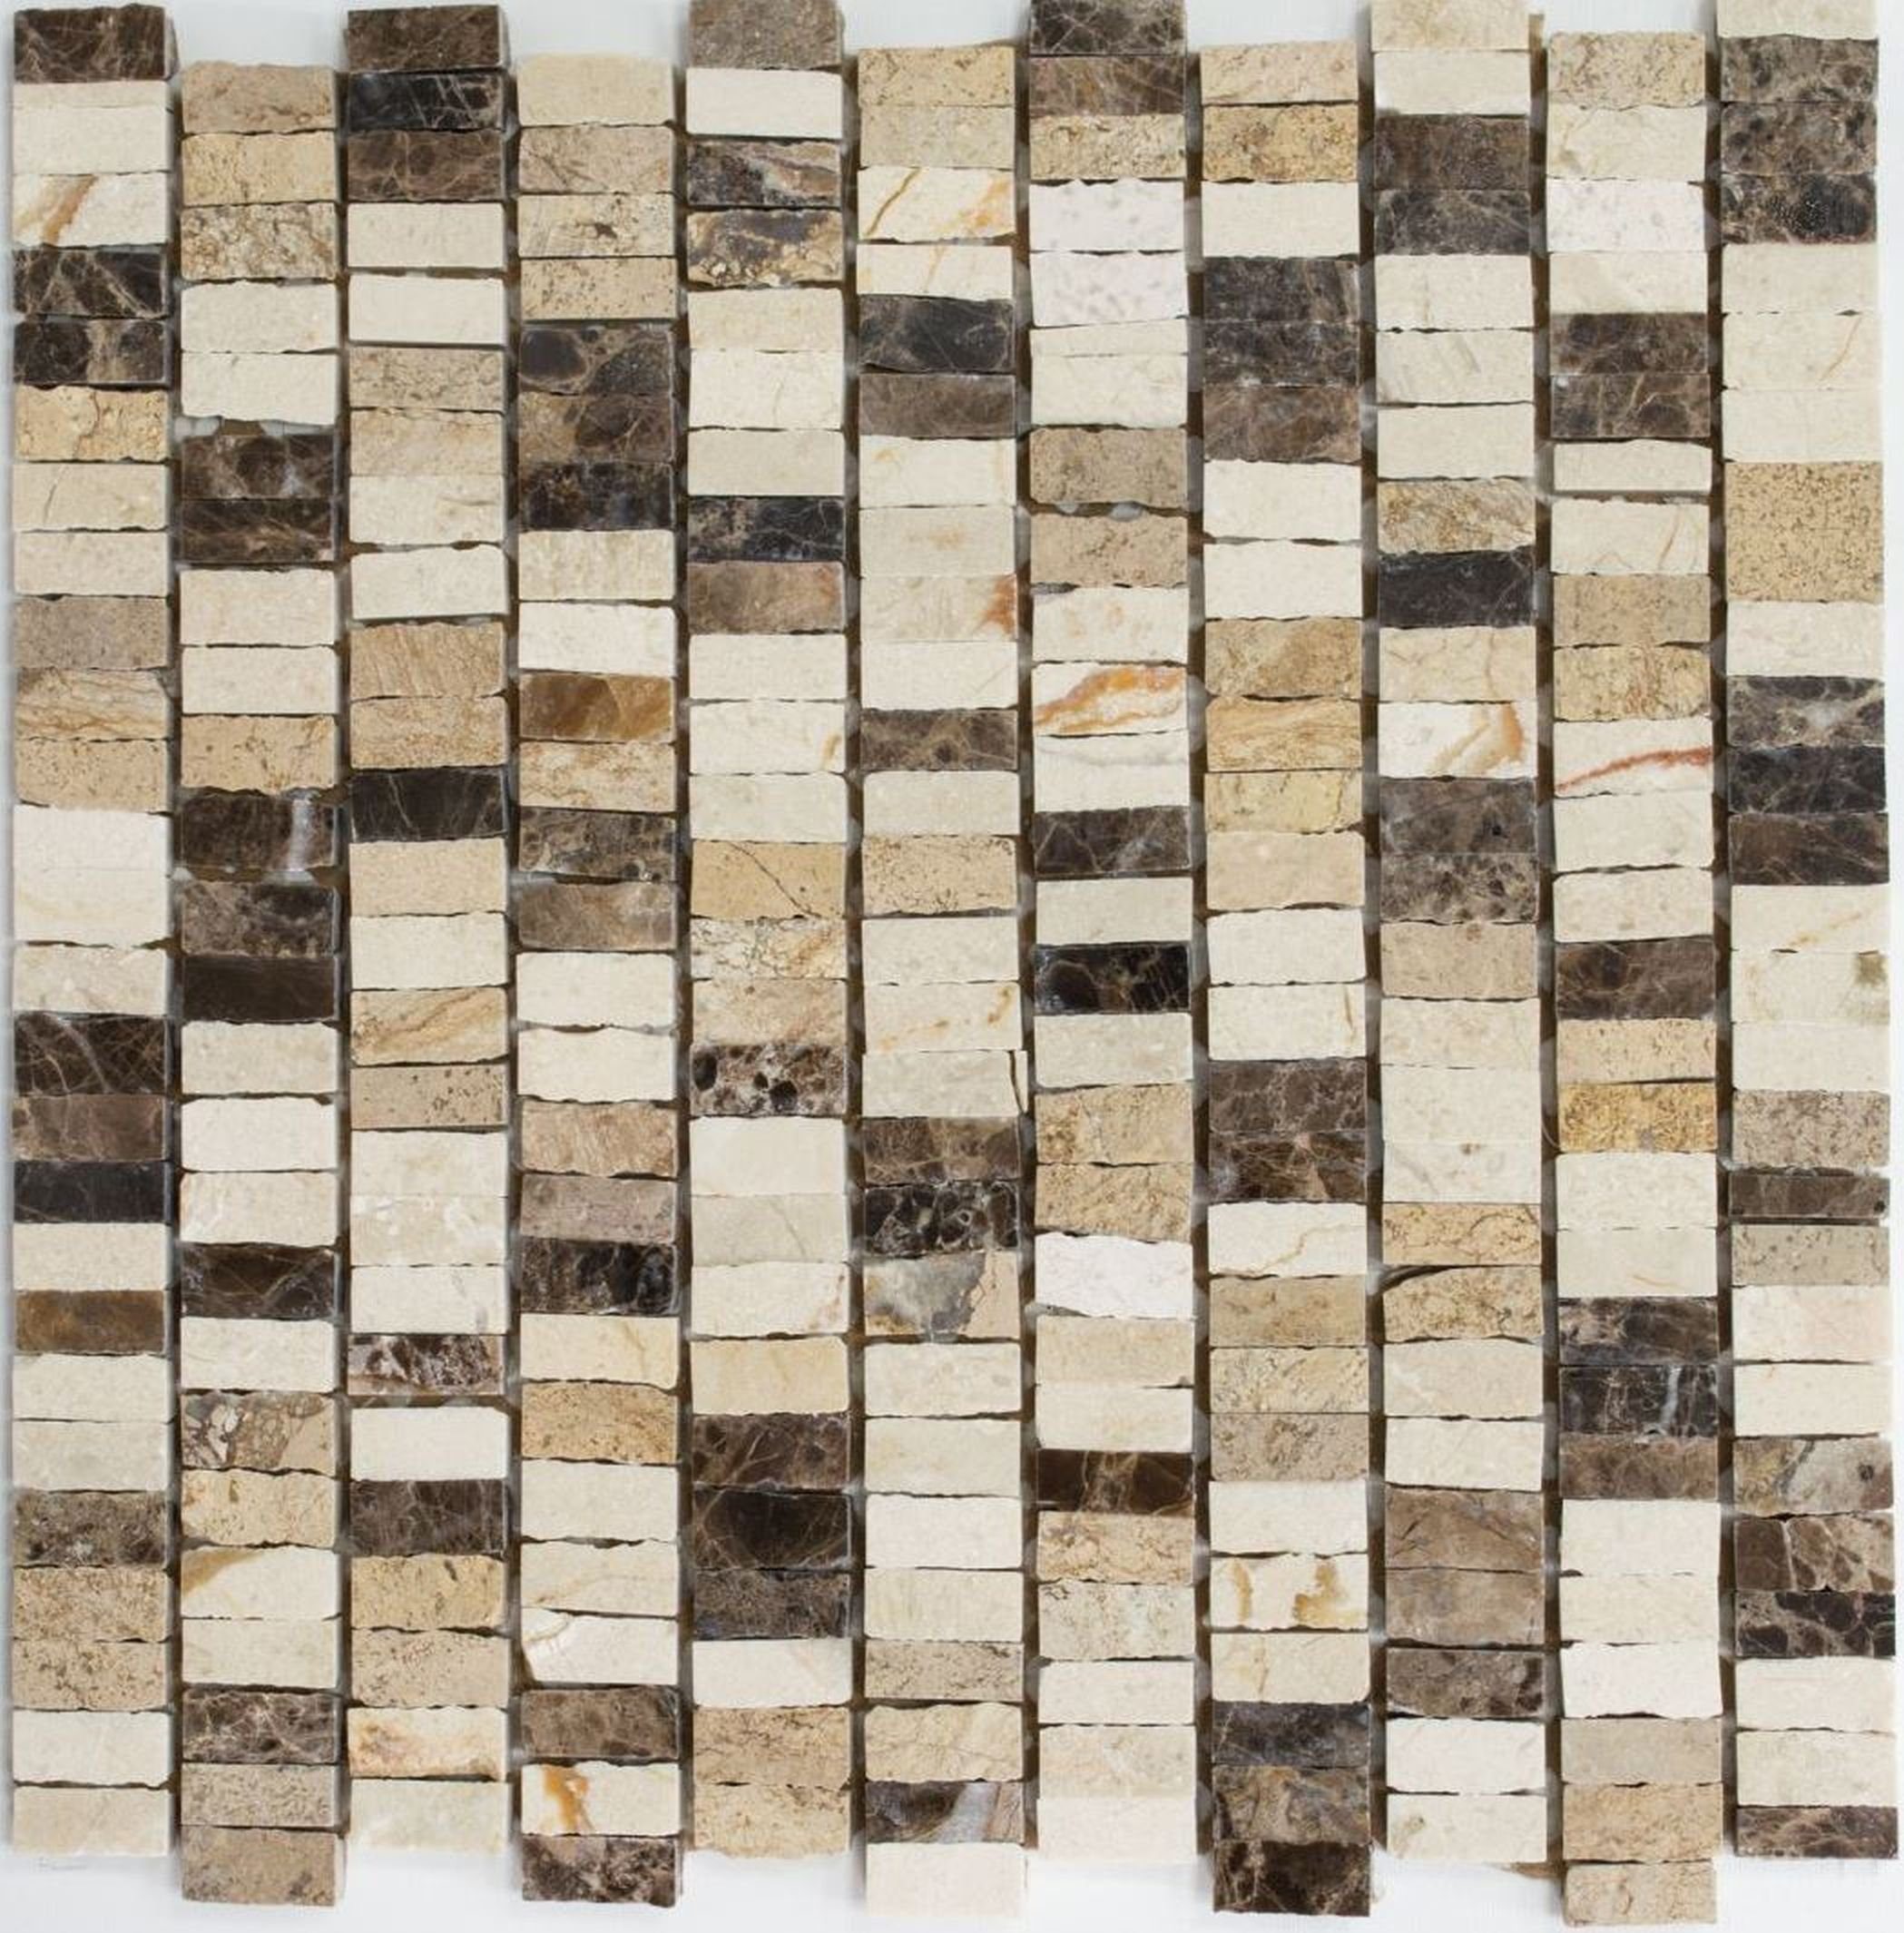 Mosani Mosaikfliesen Marmor Mosaik Fliese Naturstein beige creme dunkelbraun Küche | Fliesen